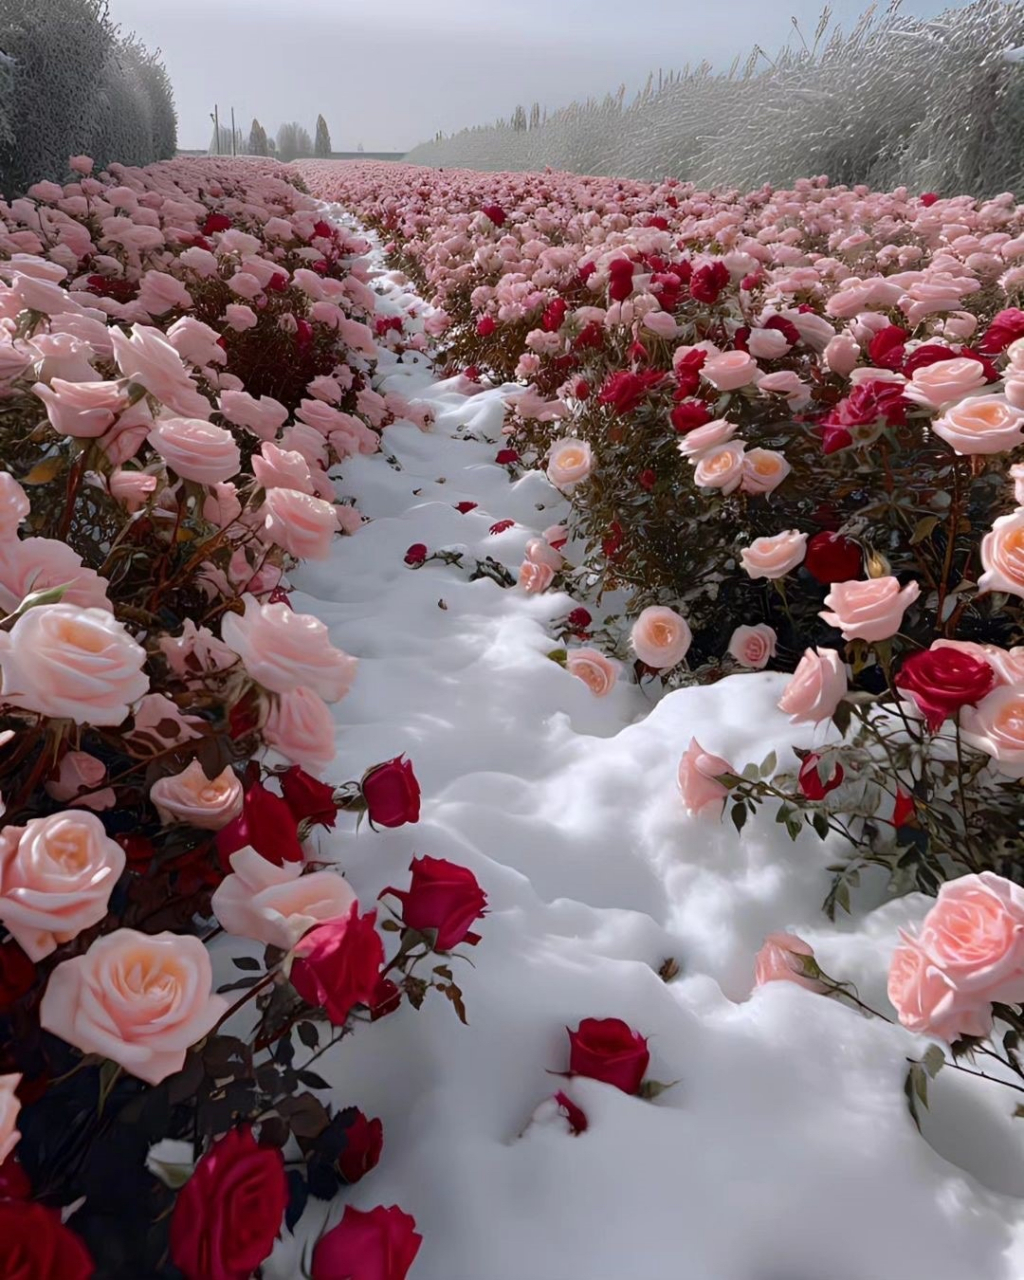 雪中玫瑰图片大全唯美图片